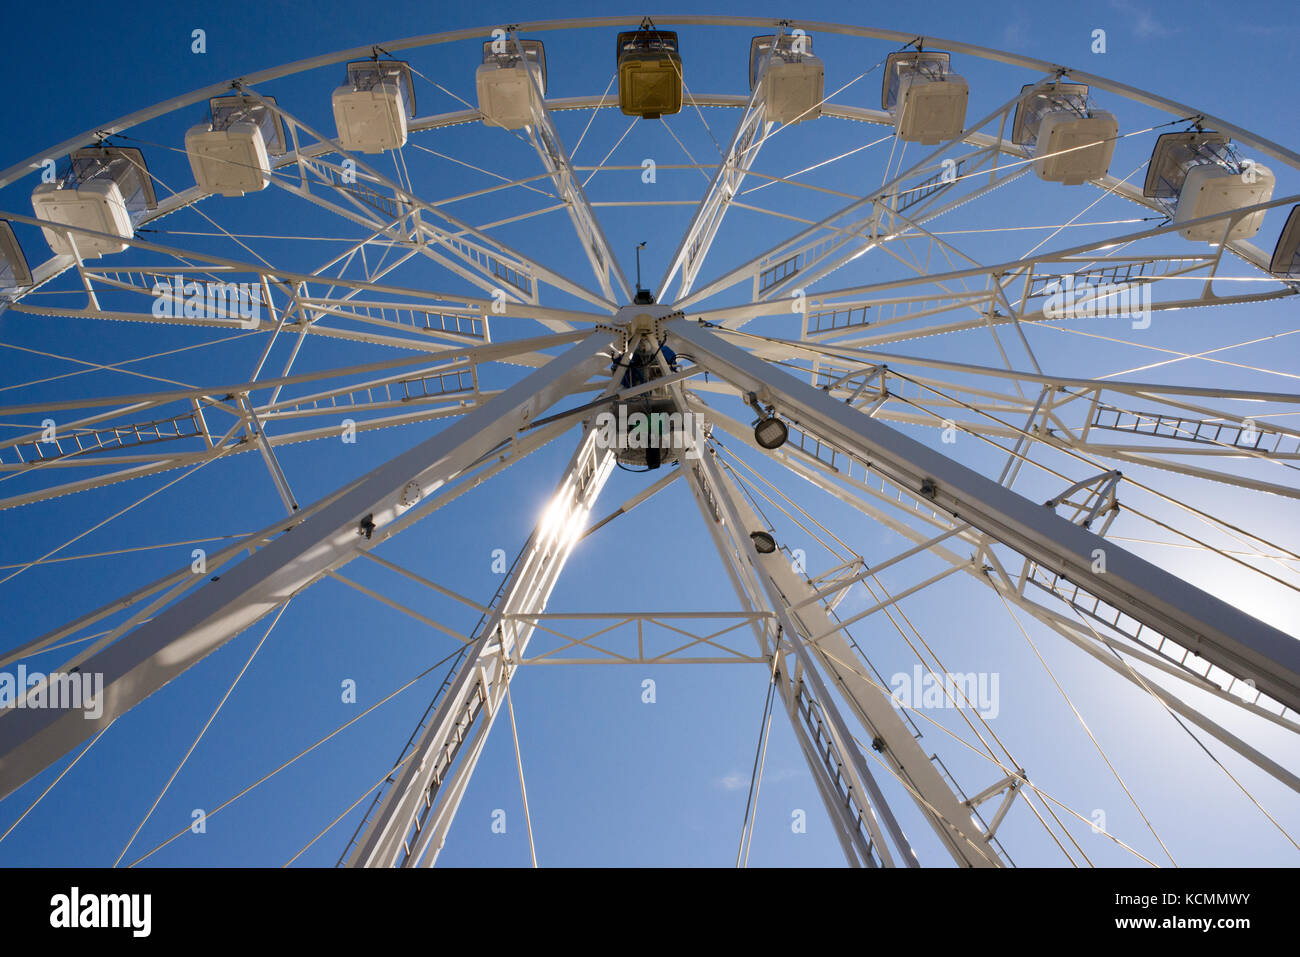 Eine weiße Riesenrad mit Kabinen von unten gegen den blauen Himmel gesehen Stockfoto